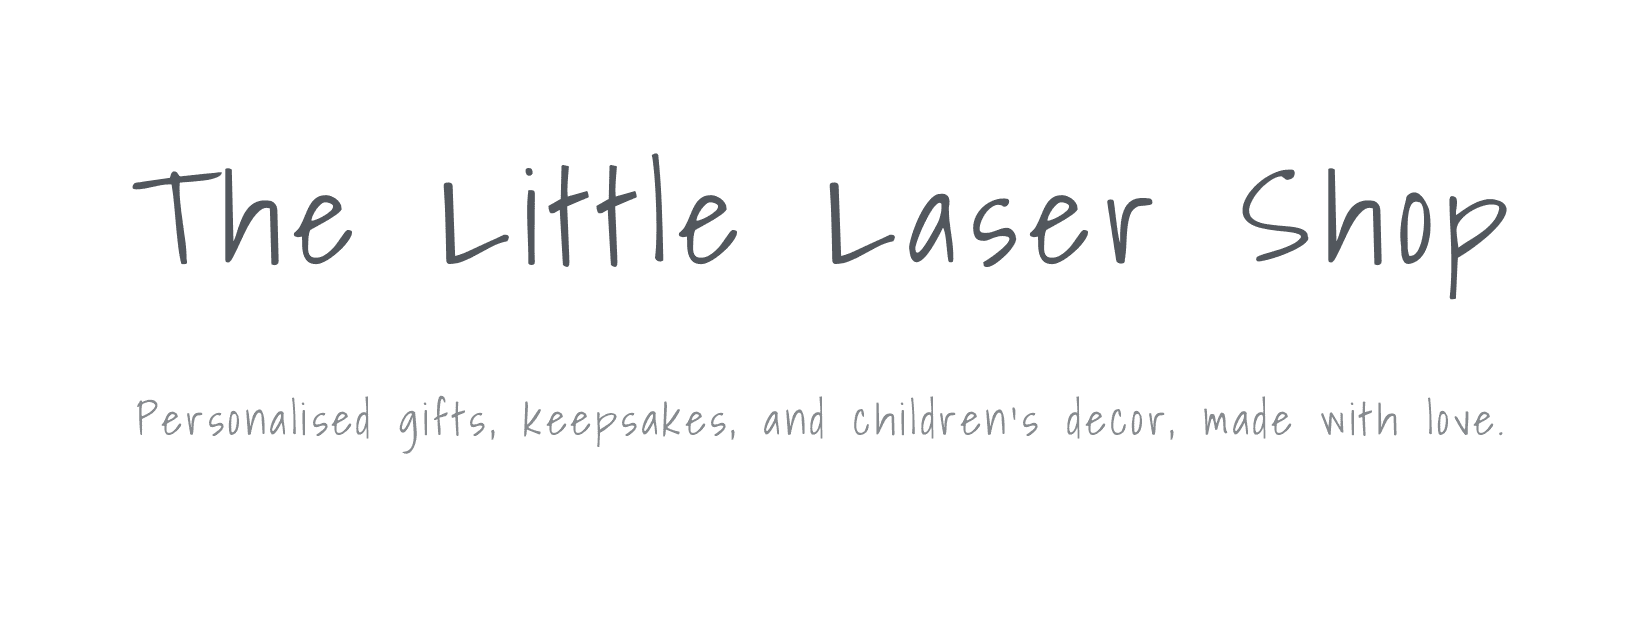 The Little Laser Shop